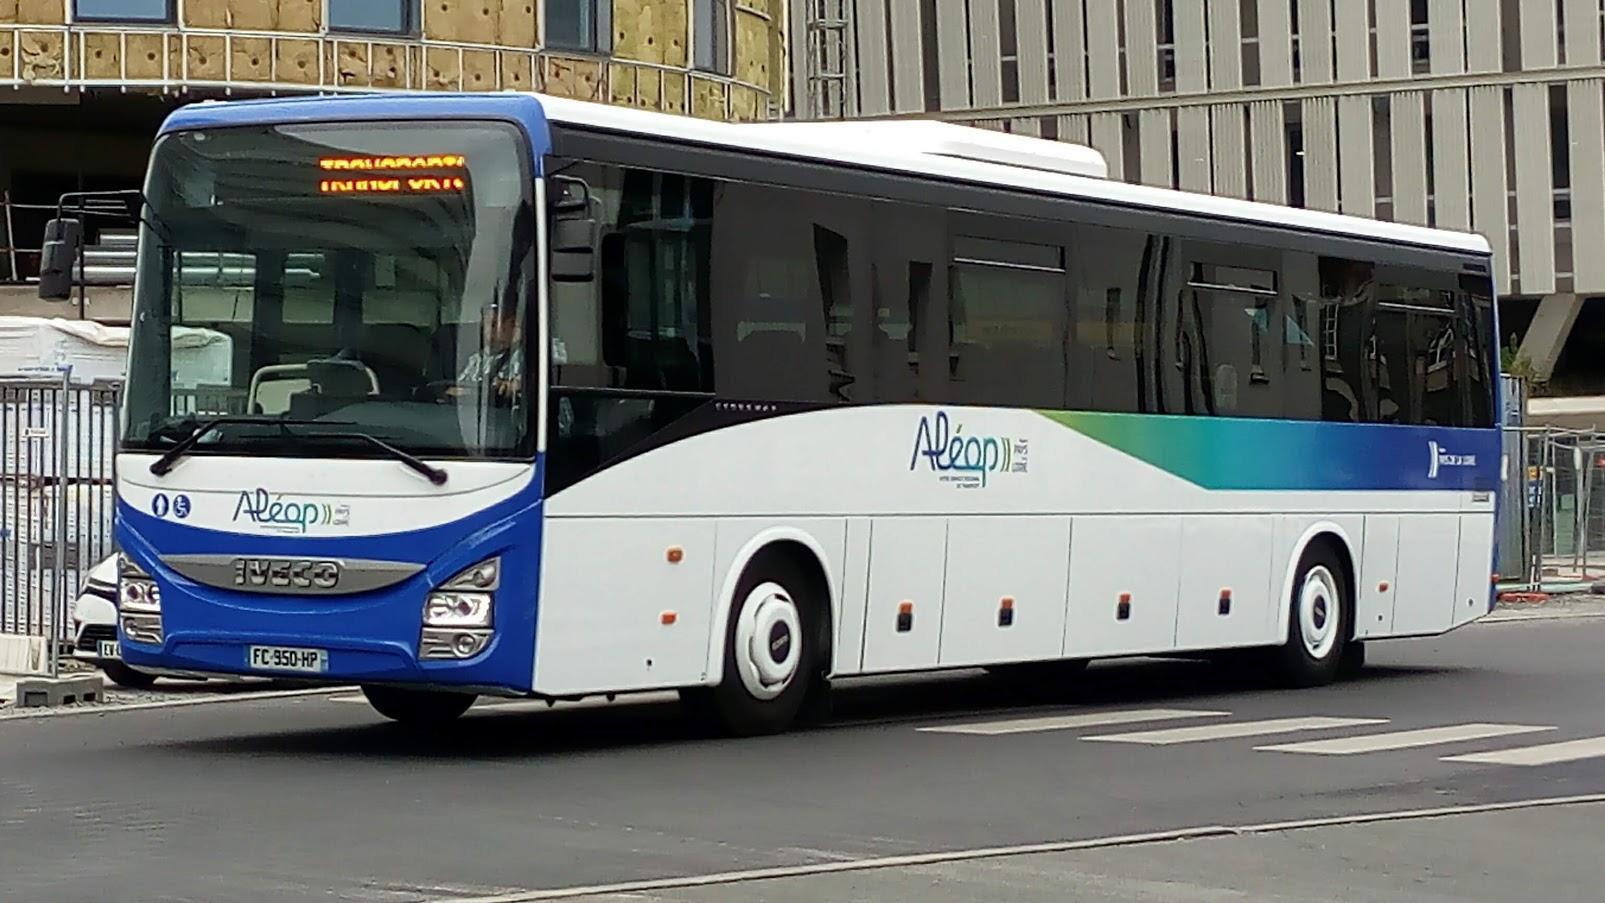 Bus ale op 2L'ACTU : PAYS-DE-LA-LOIRE : TRANSPORTS : MODIFICATIONS DU RÉSEAU ALÉOP